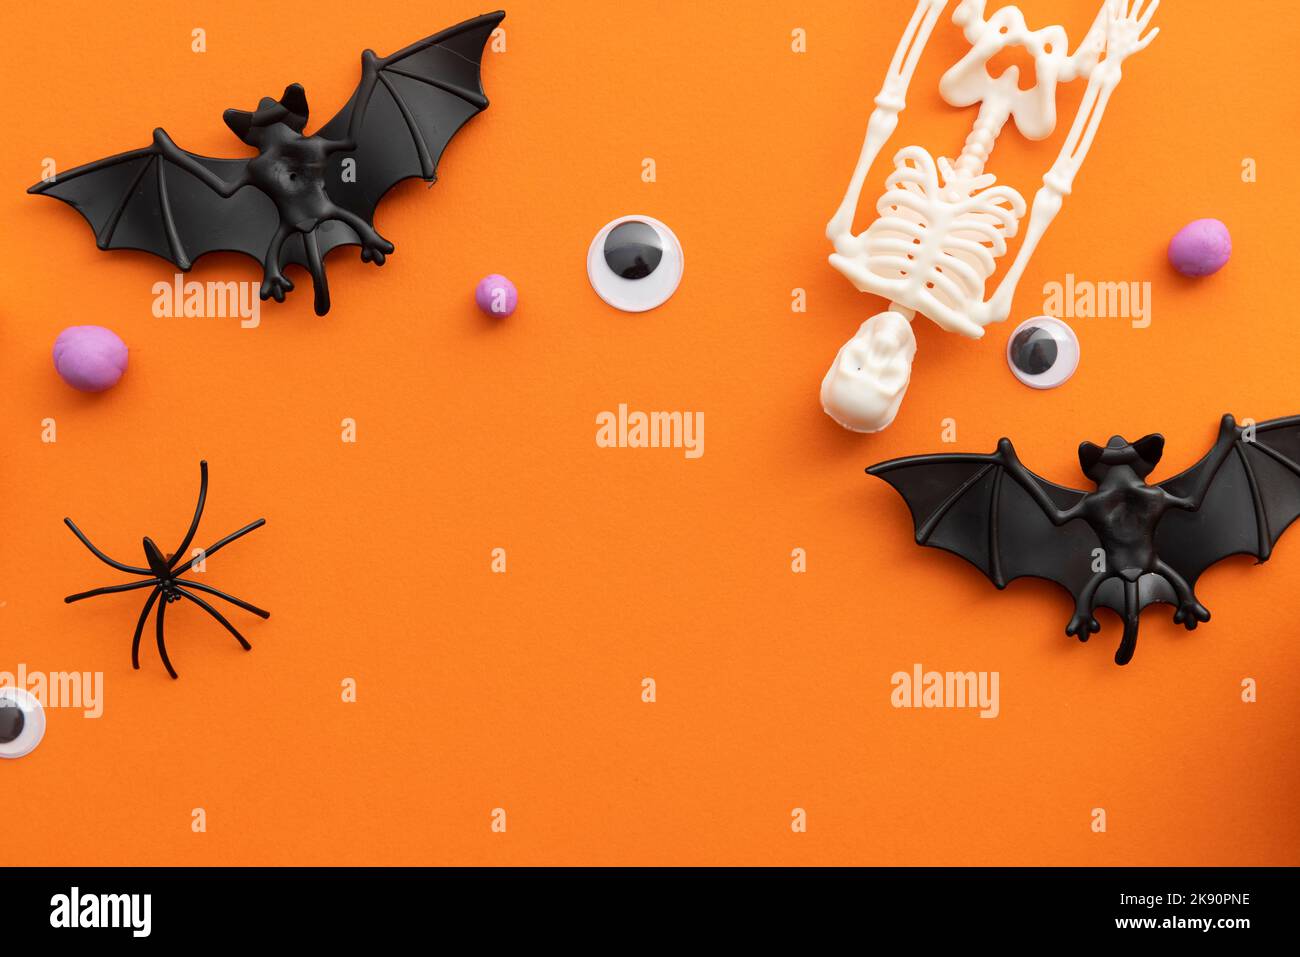 Sfondo di Halloween con scheletri, pipistrelli occhi e ragni Foto Stock